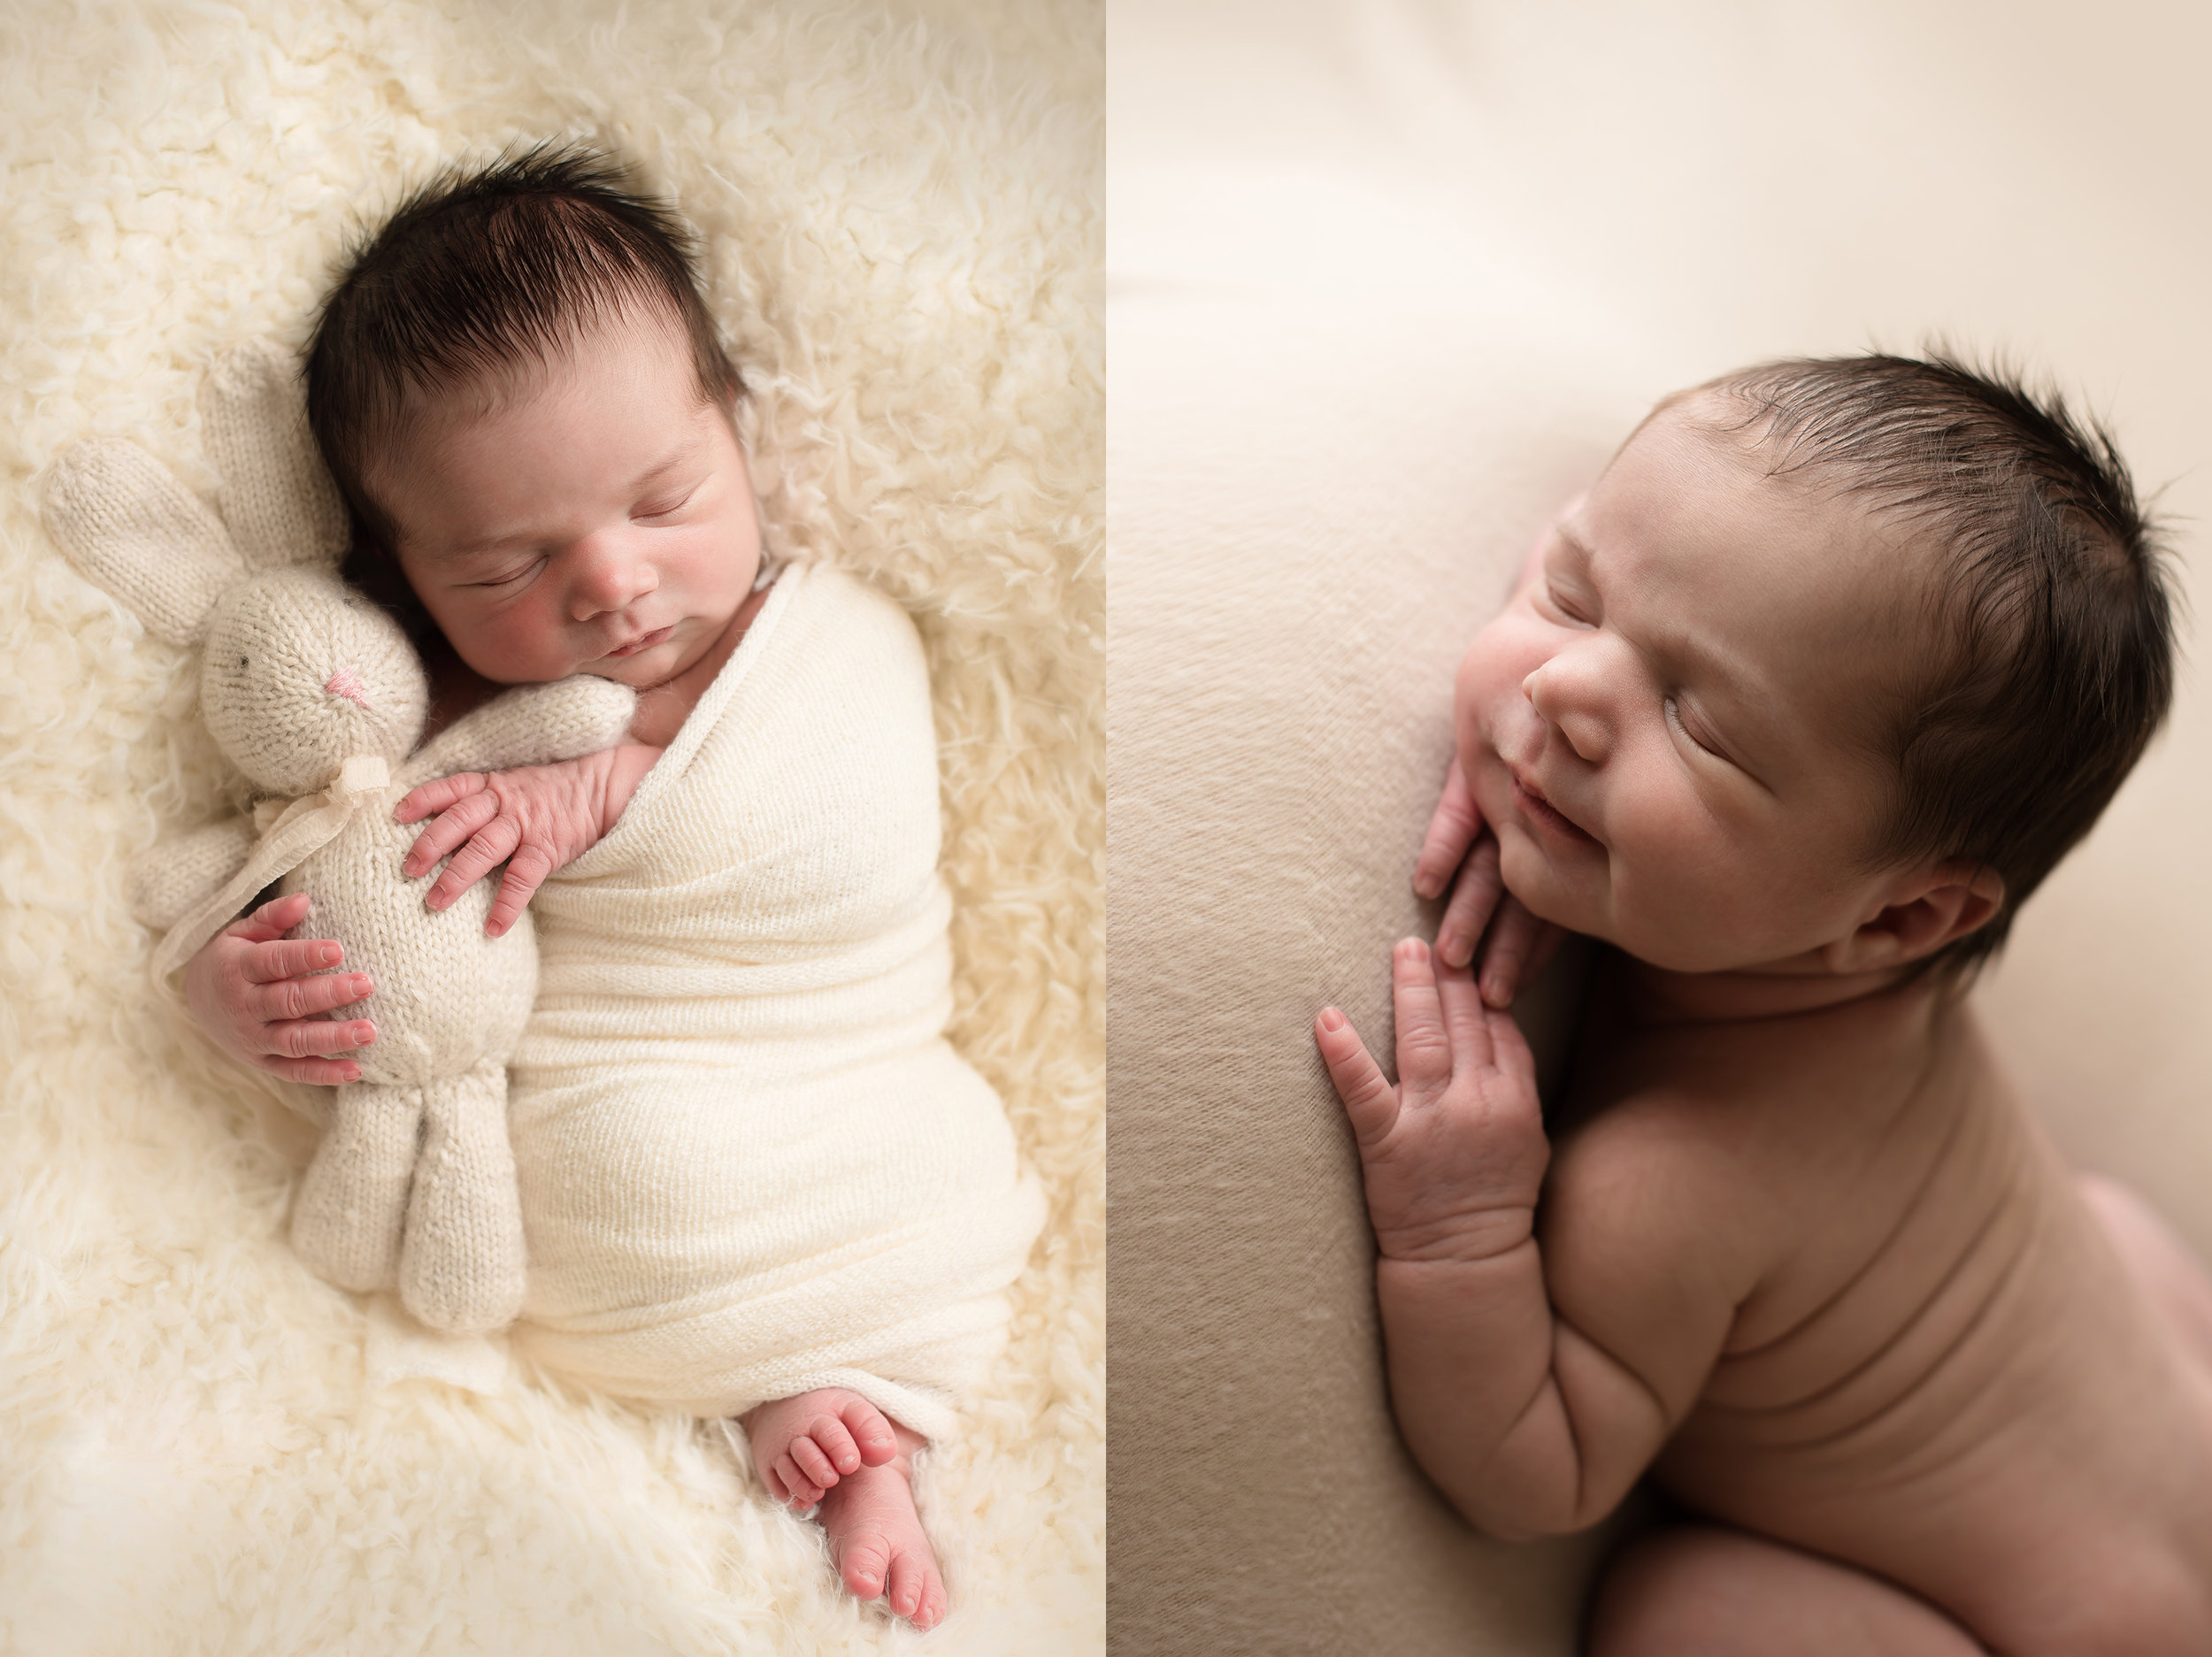 best-newborn-photographer-columbus-ohio.jpg